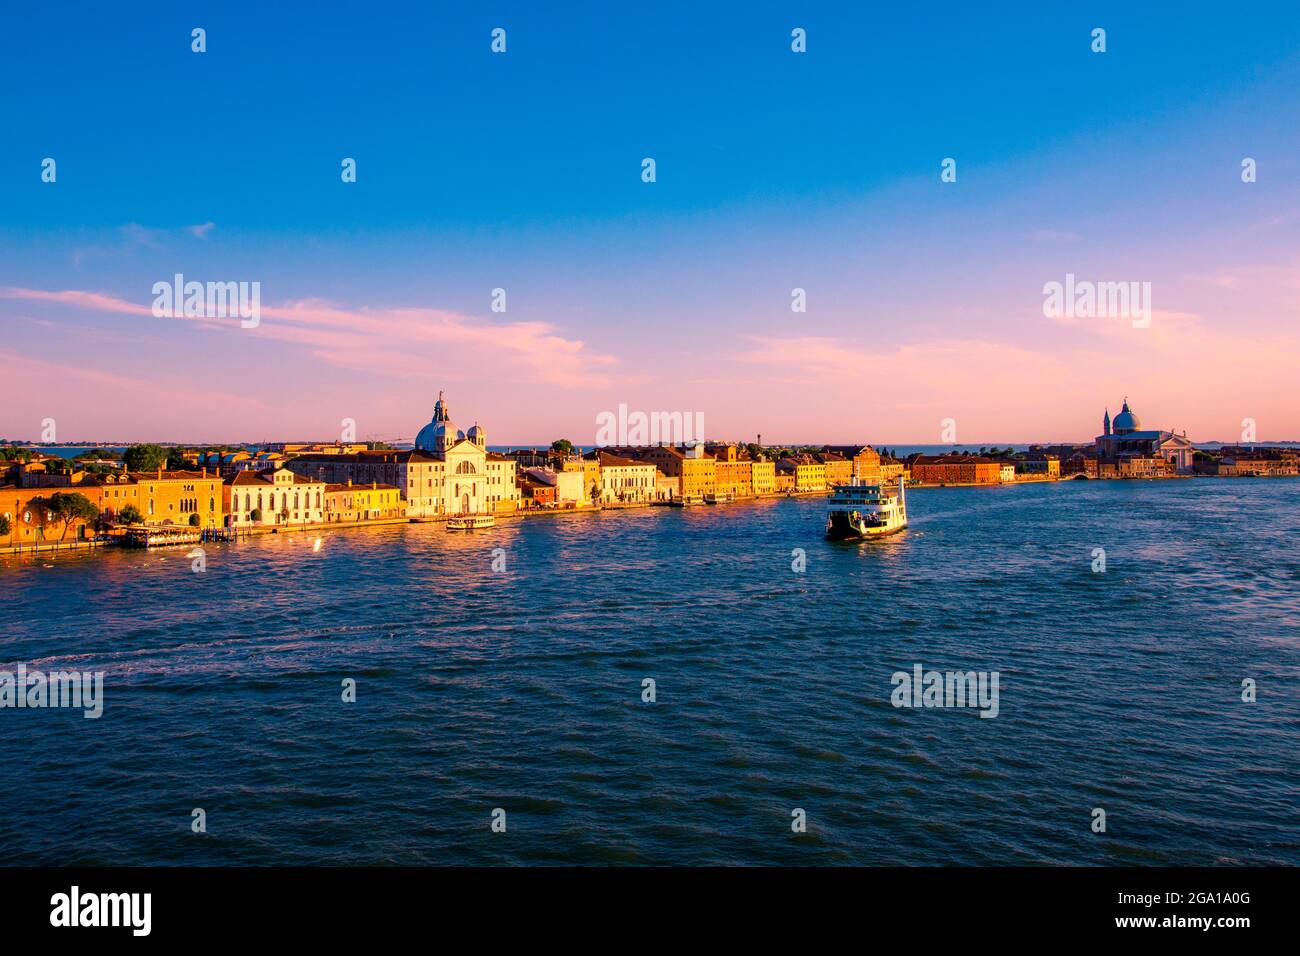 Italy Venice romantic city Stock Photo